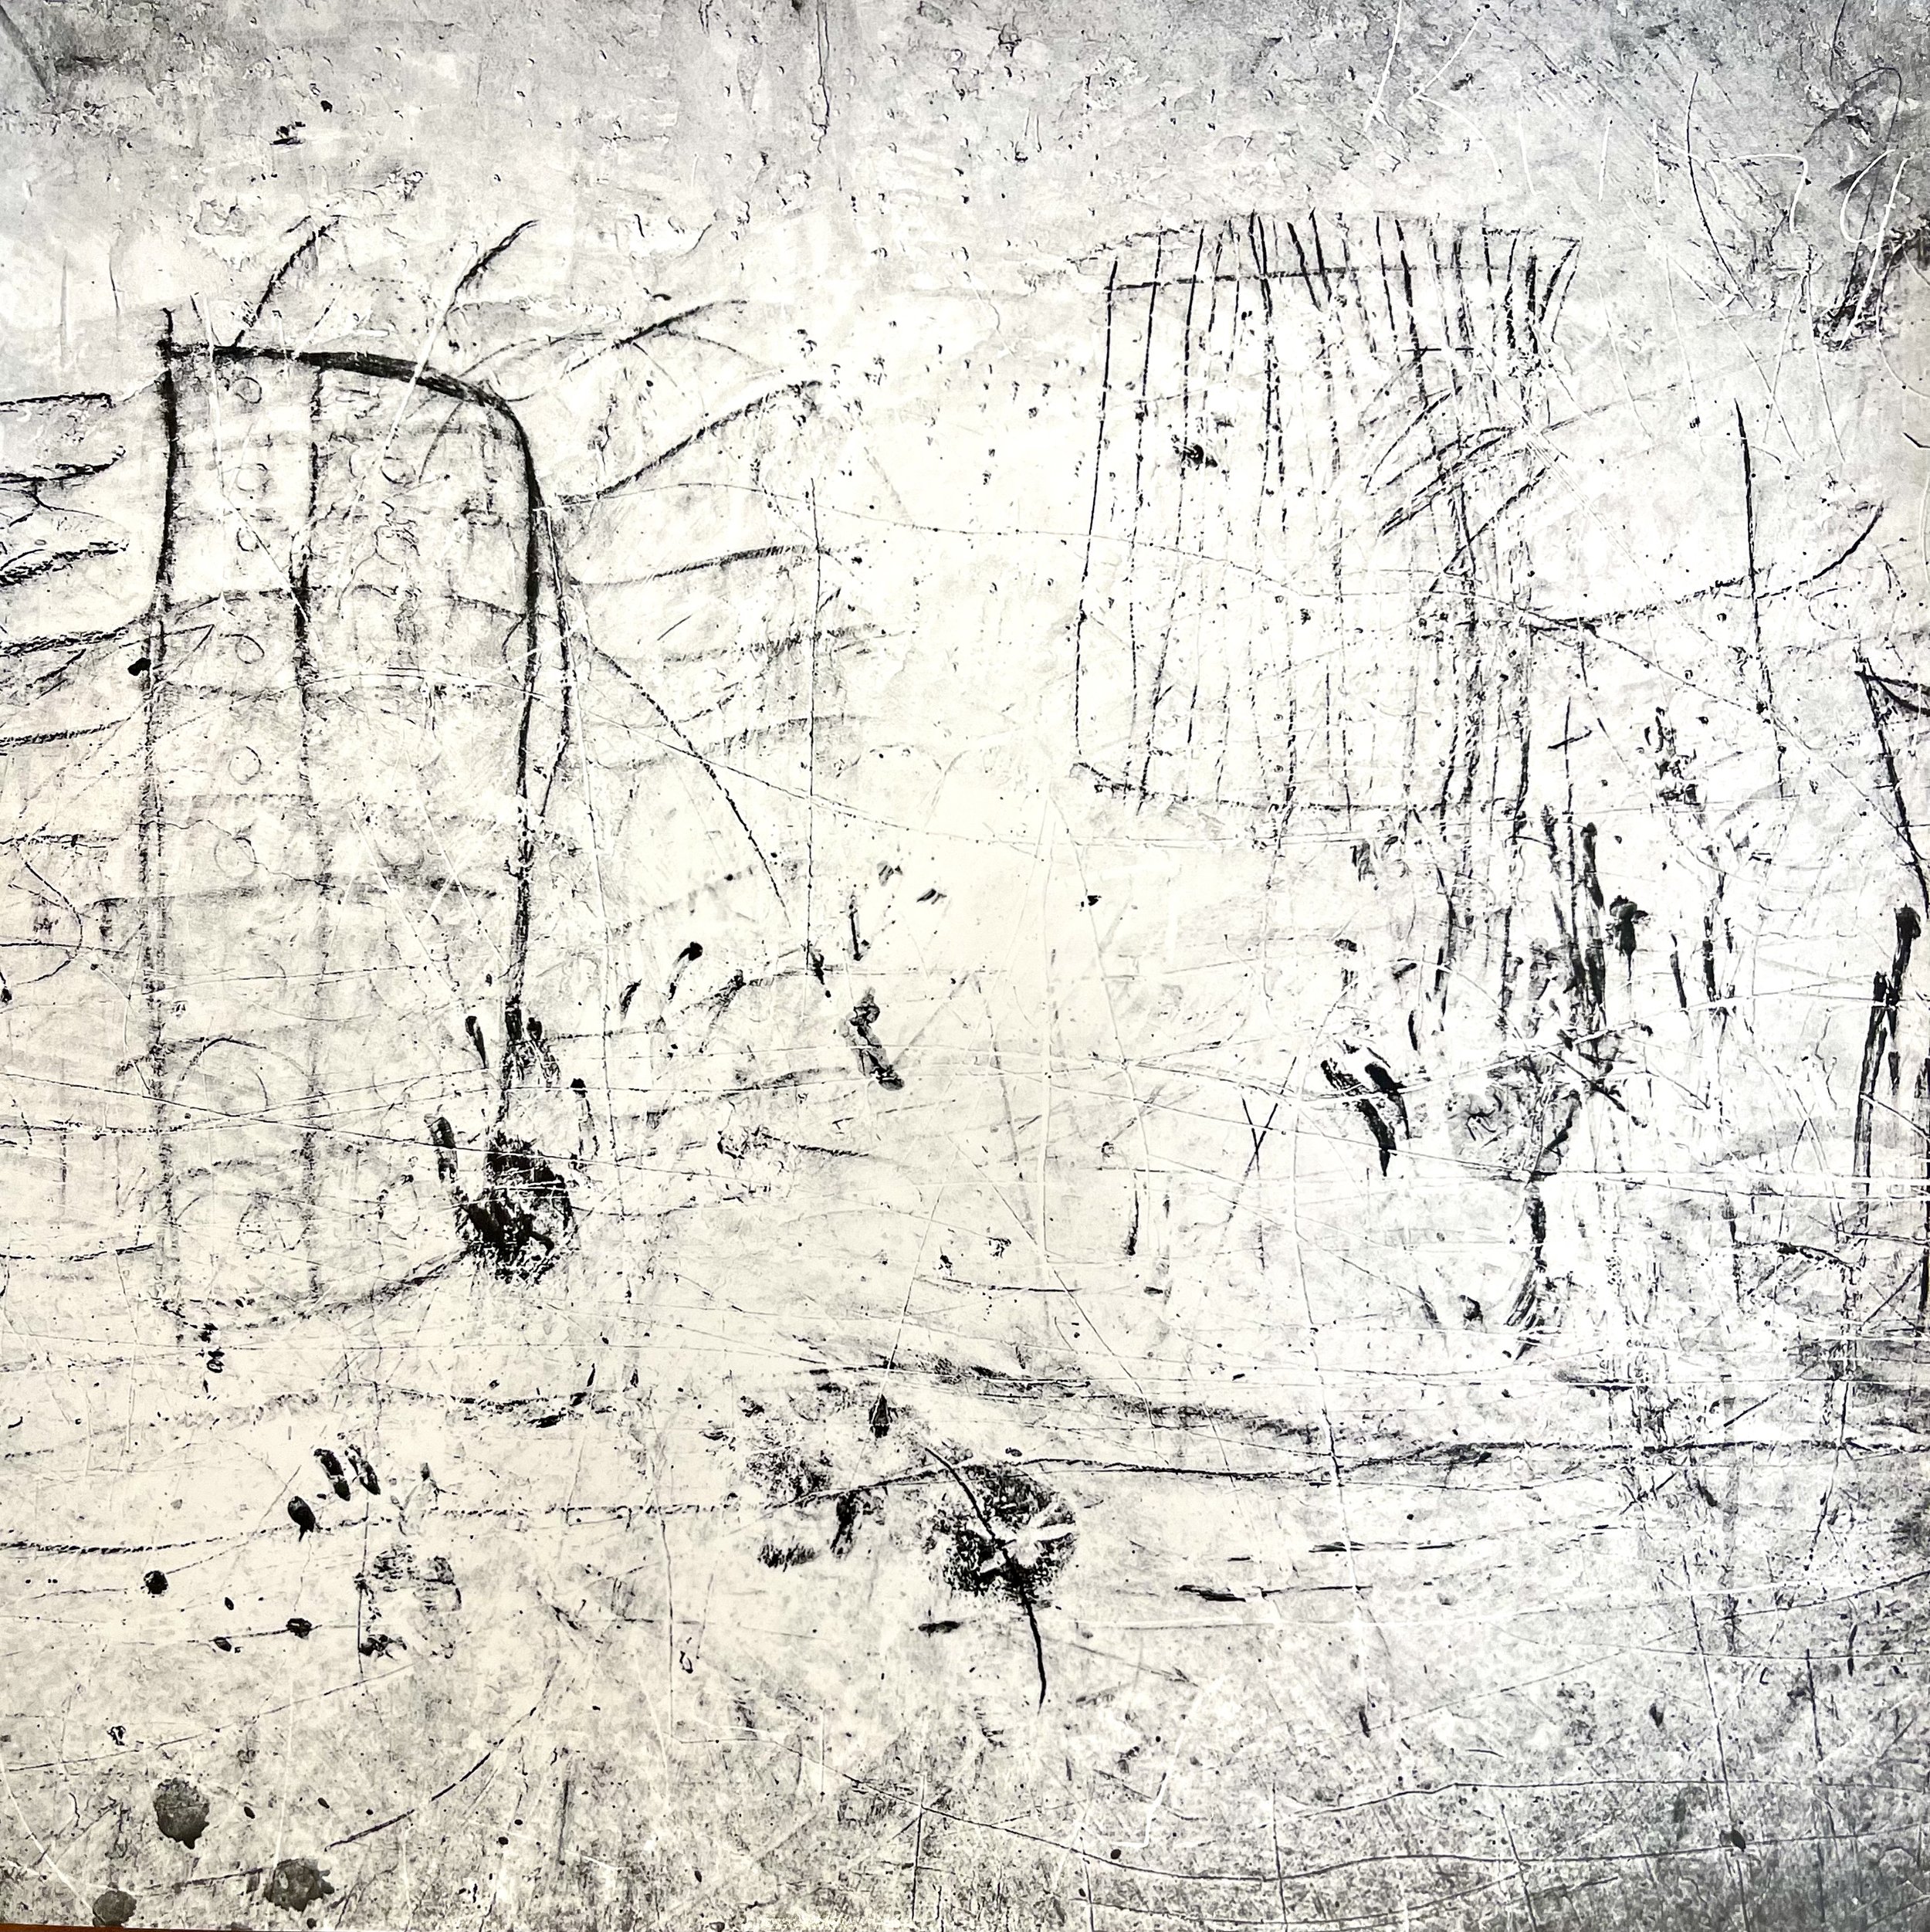 Brendan Bullock, Wall Detail, Moduli, Tanzania